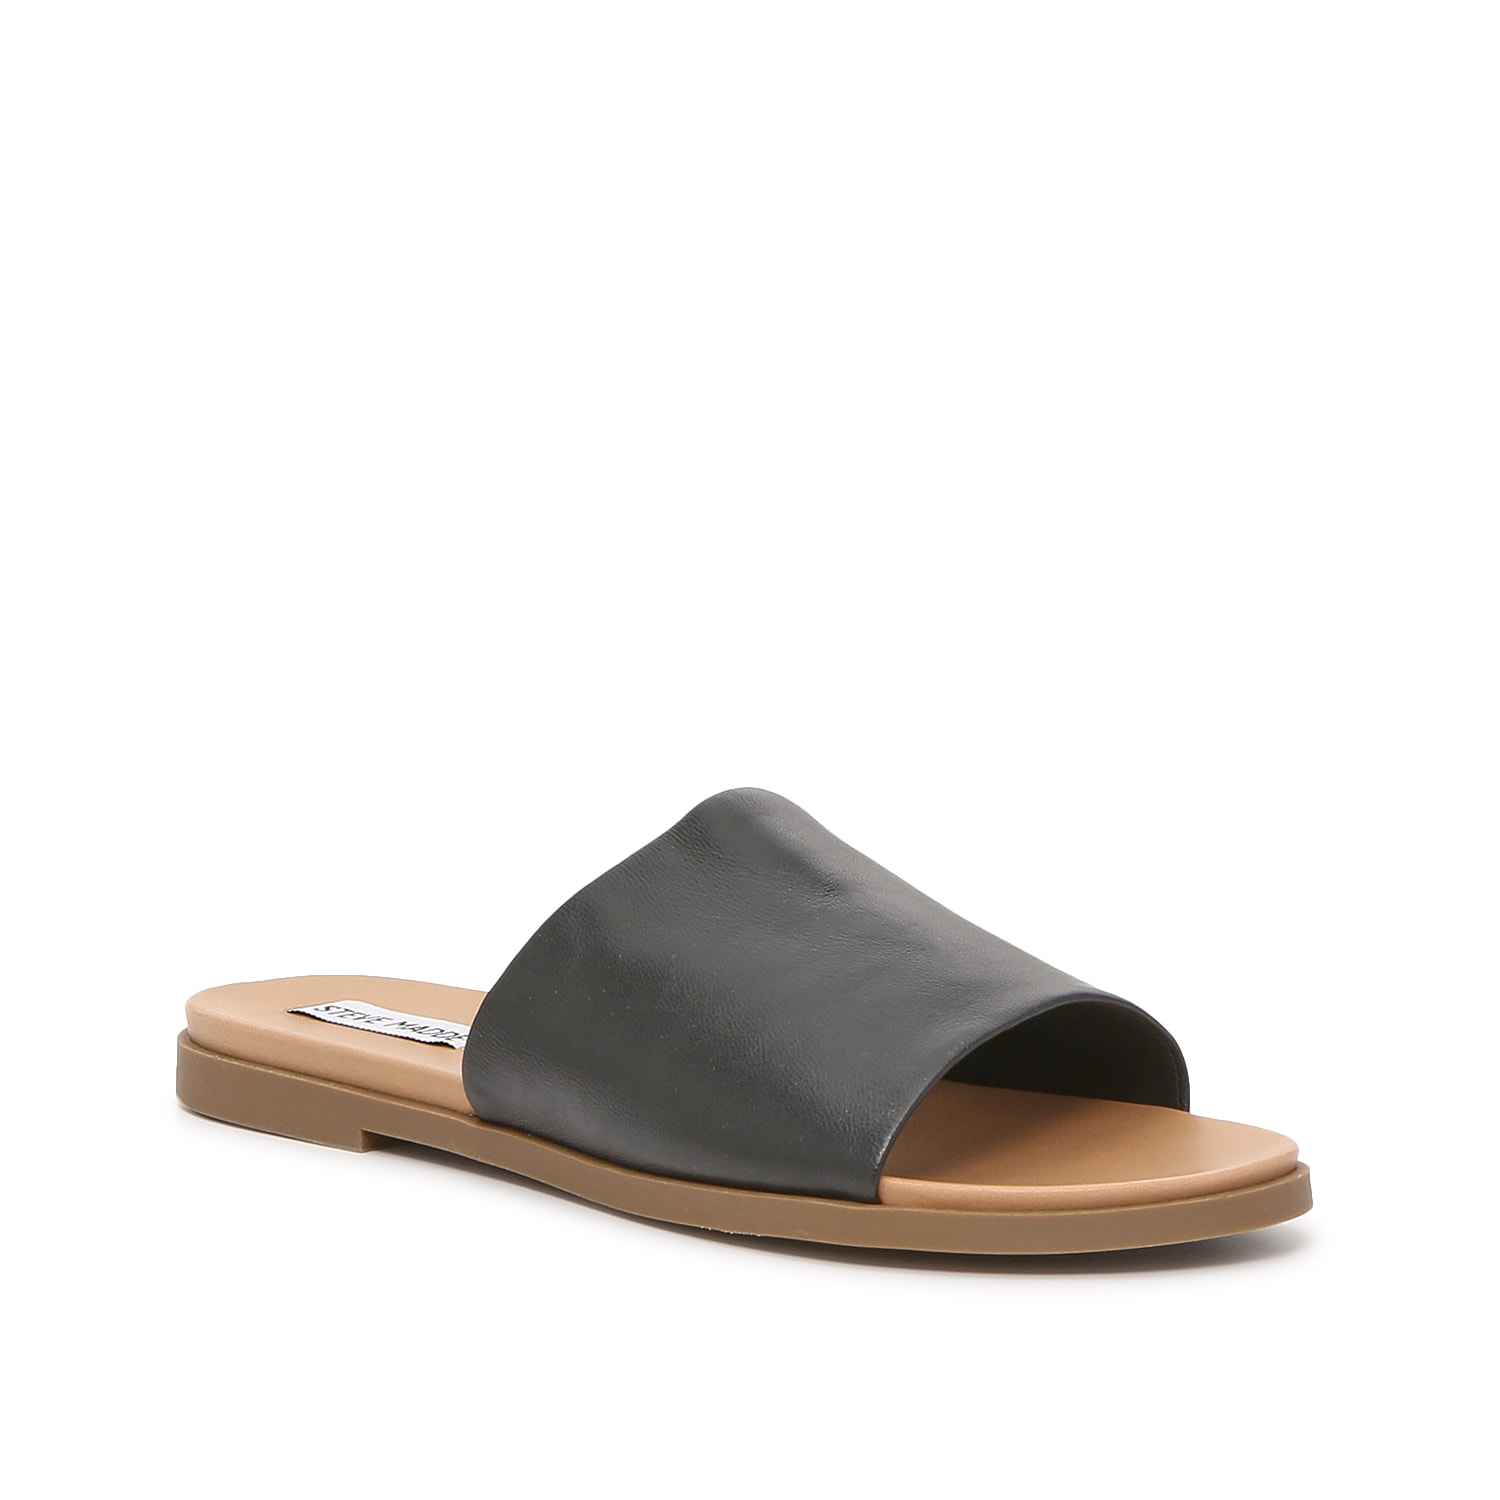 Steve Madden Karolyn Sandal | Women's | Light Brown Leather | Size 6.5 | Sandals | Flat | Slide